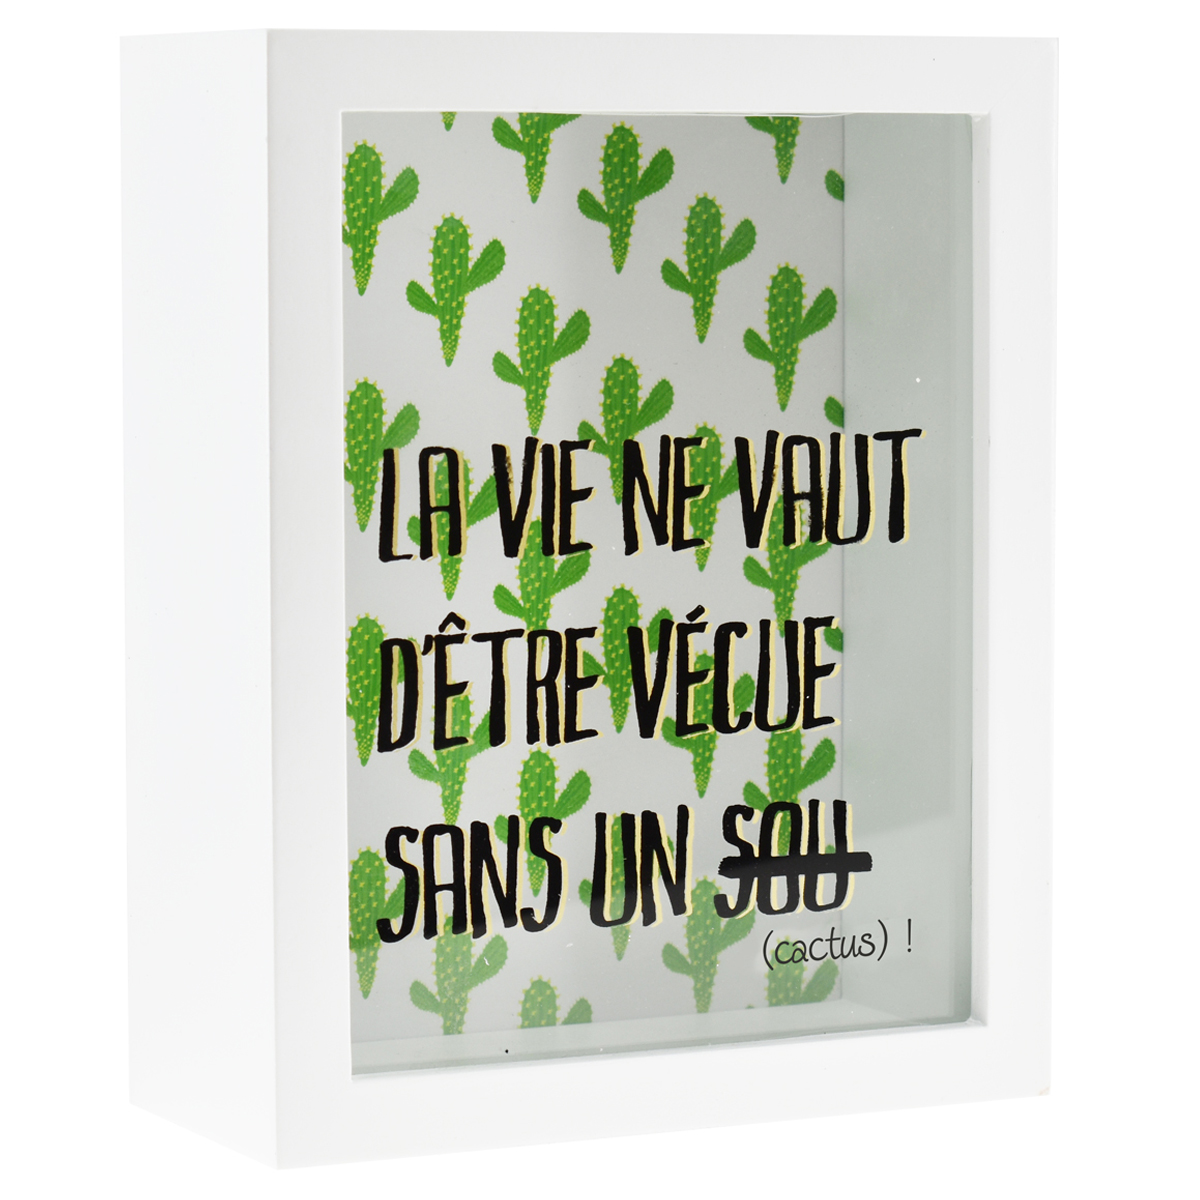 Tirelire bois \'Messages\' blanc vert (La vie ne vaut d\'être vécue sans un sou (cactus) !) - 20x16x7 cm - [R0573]